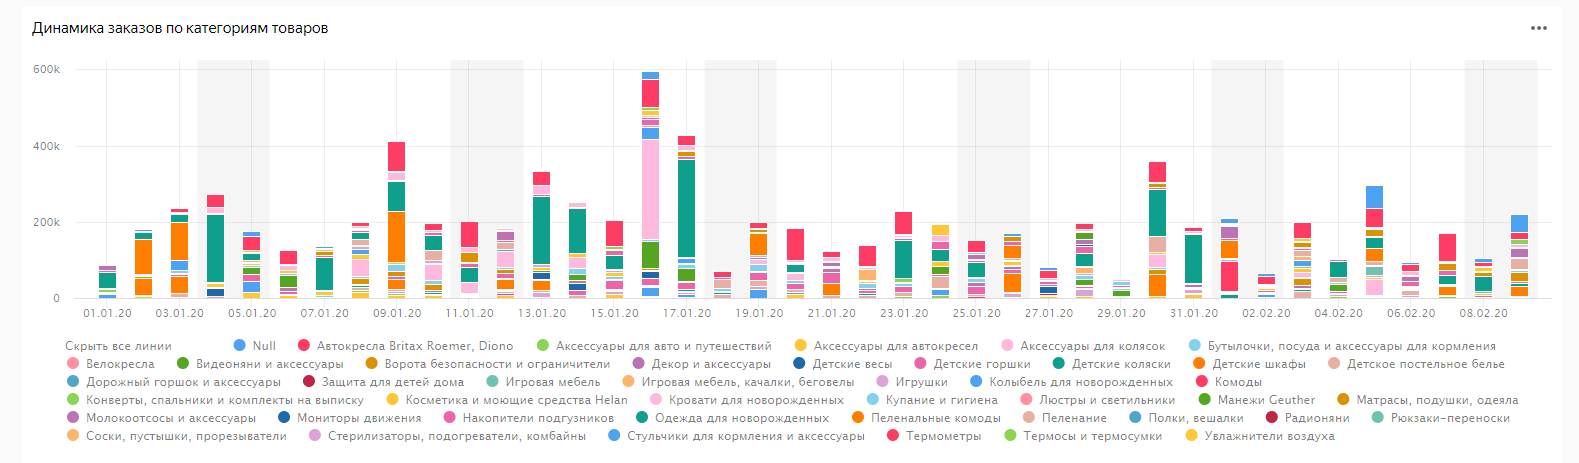 Интерфейс Yandex DataLens - на вкладке «Заказы» чарты с распределением заказов по рекламным каналам и другие